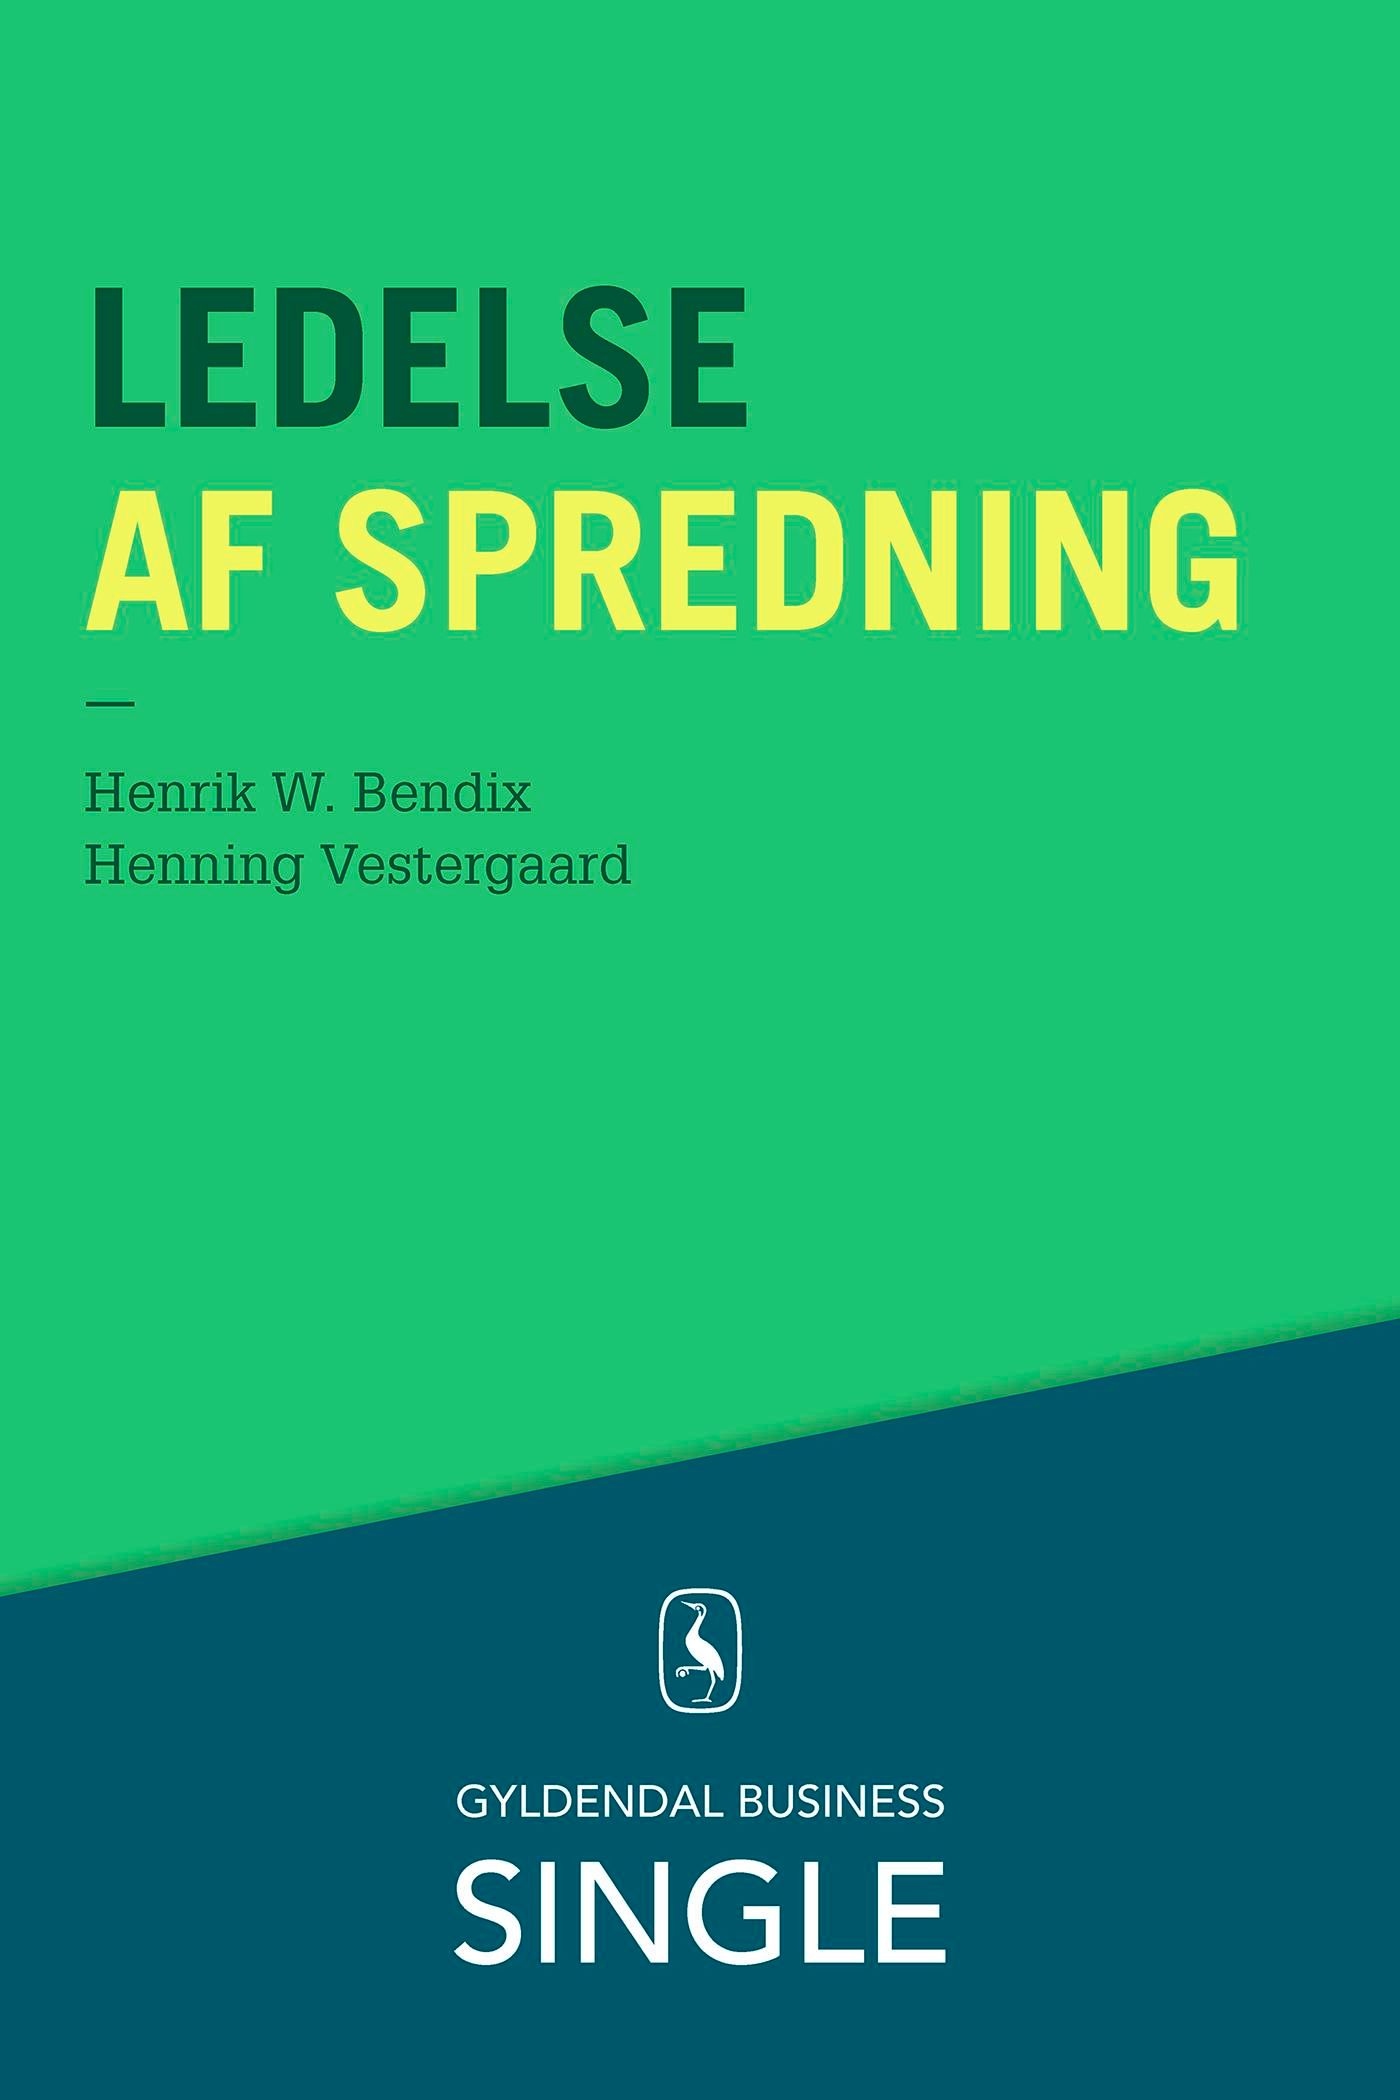 Ledelse af spredning, e-bog af Henrik W. Bendix, Henning Vestergaard